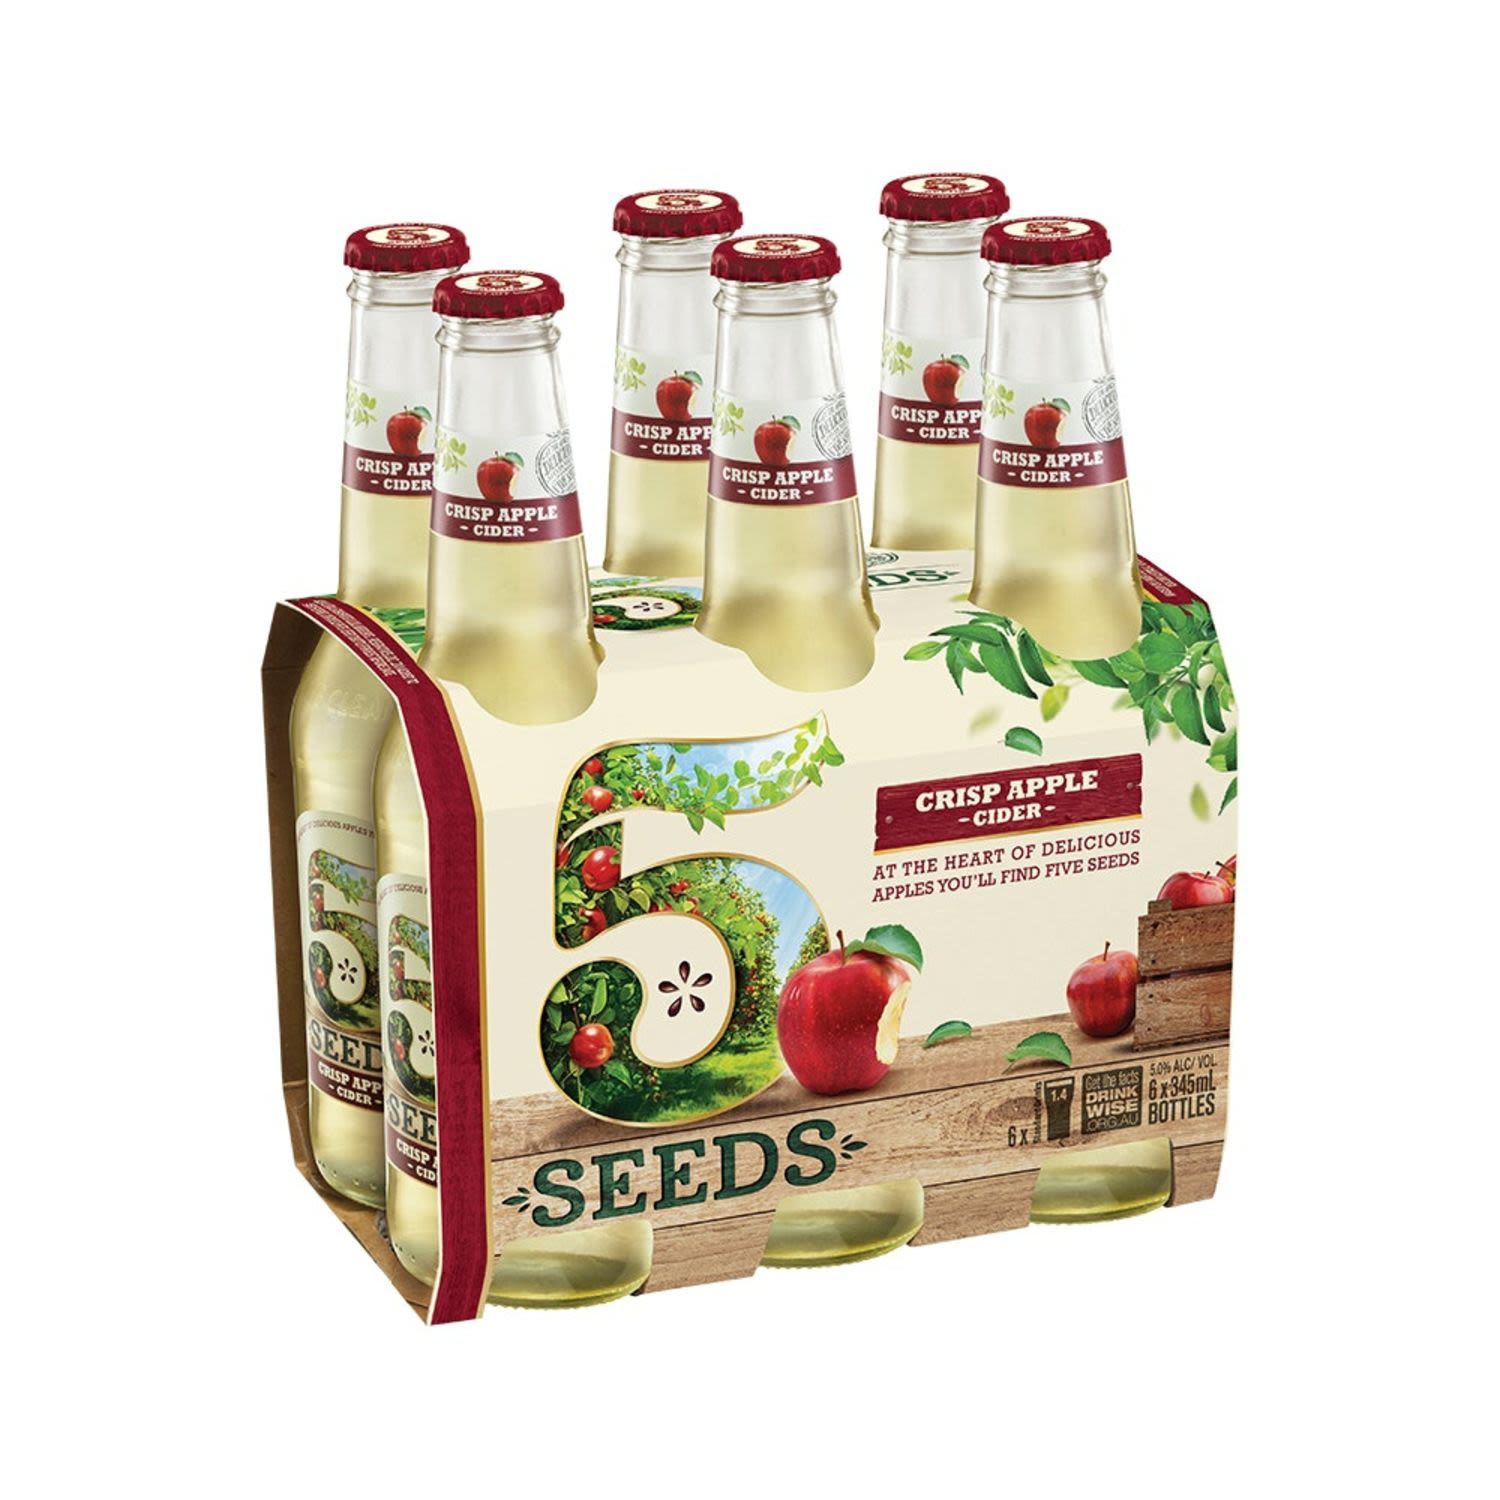 5 Seeds Crisp Apple Cider 345mL 6 Pack